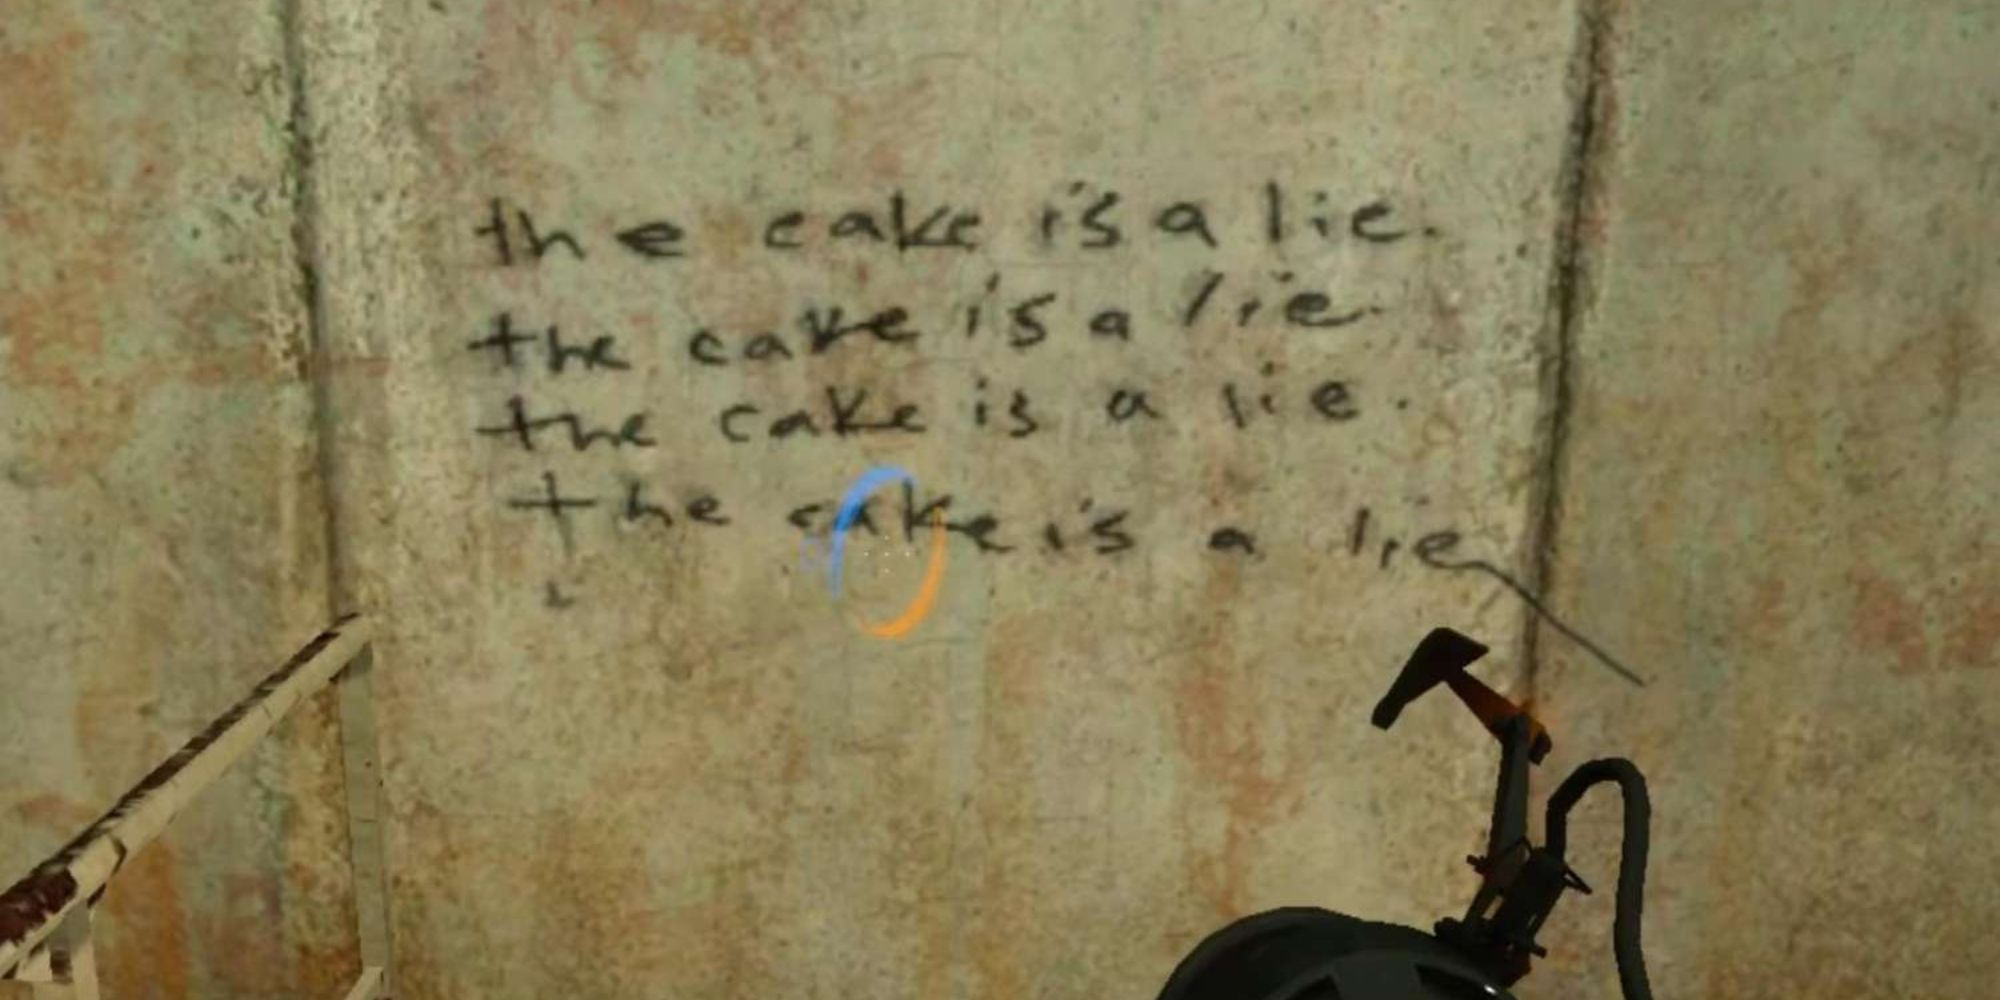 Portal Screenshot Of Message The Cake Is A Lie Written On A Wall